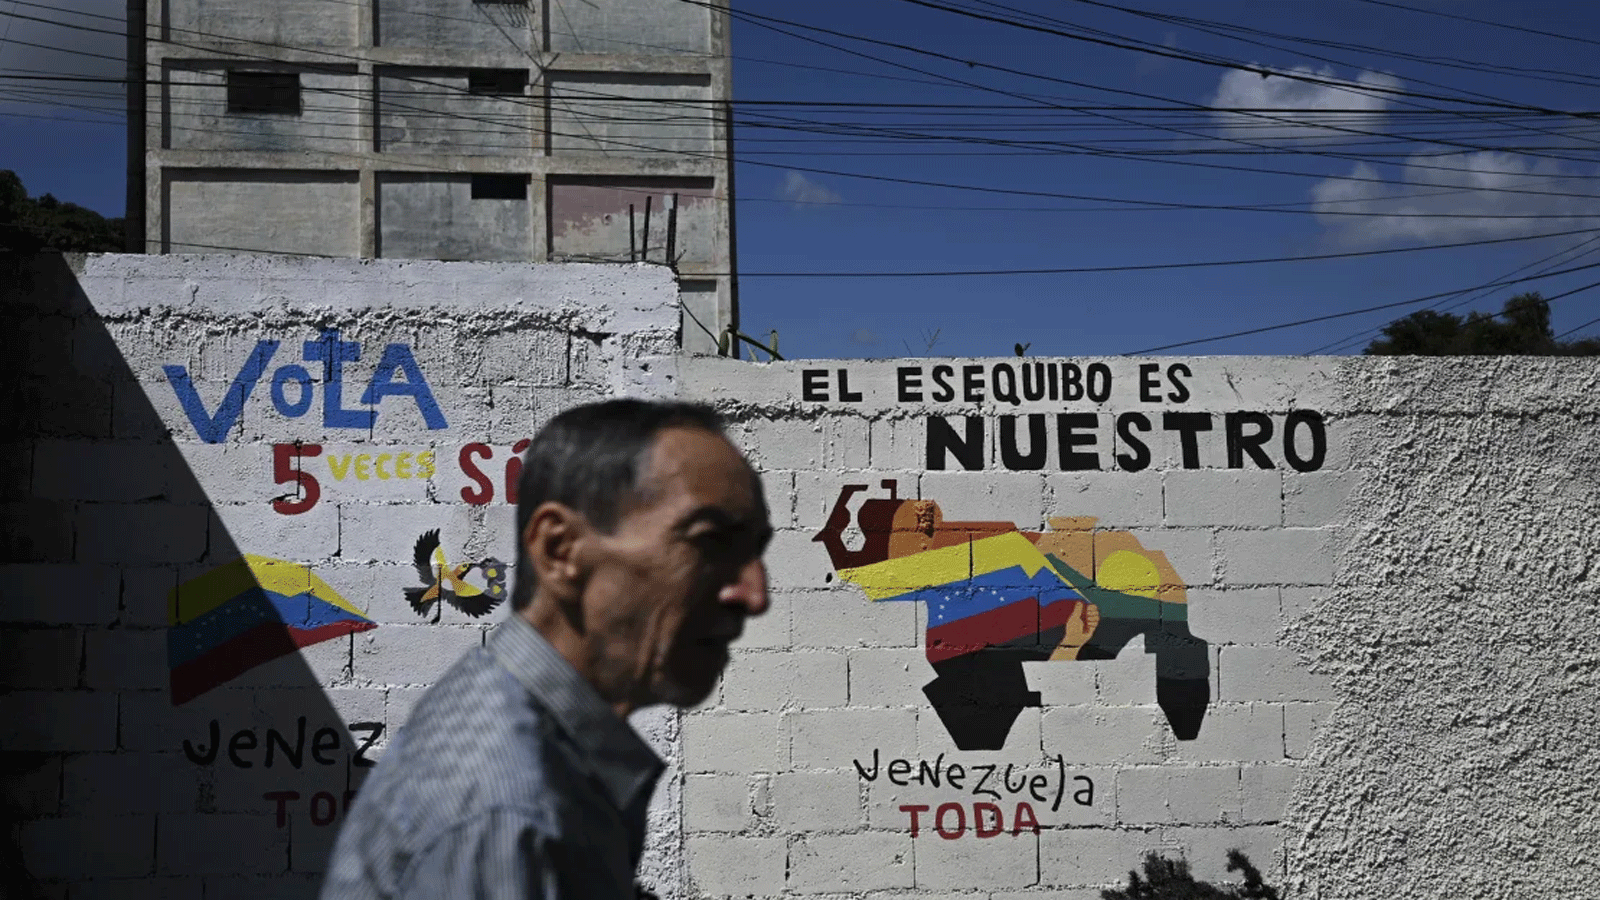 جدارية تحمل شعارات تؤيد انضمام منطقة إيسيكيبو الغنية بالنفط إلى فنزويلا خلال الحملة الانتخابية للاستفتاء بهذا الخصوص. 28 نوفمبر(تشرين الثاني) 2023